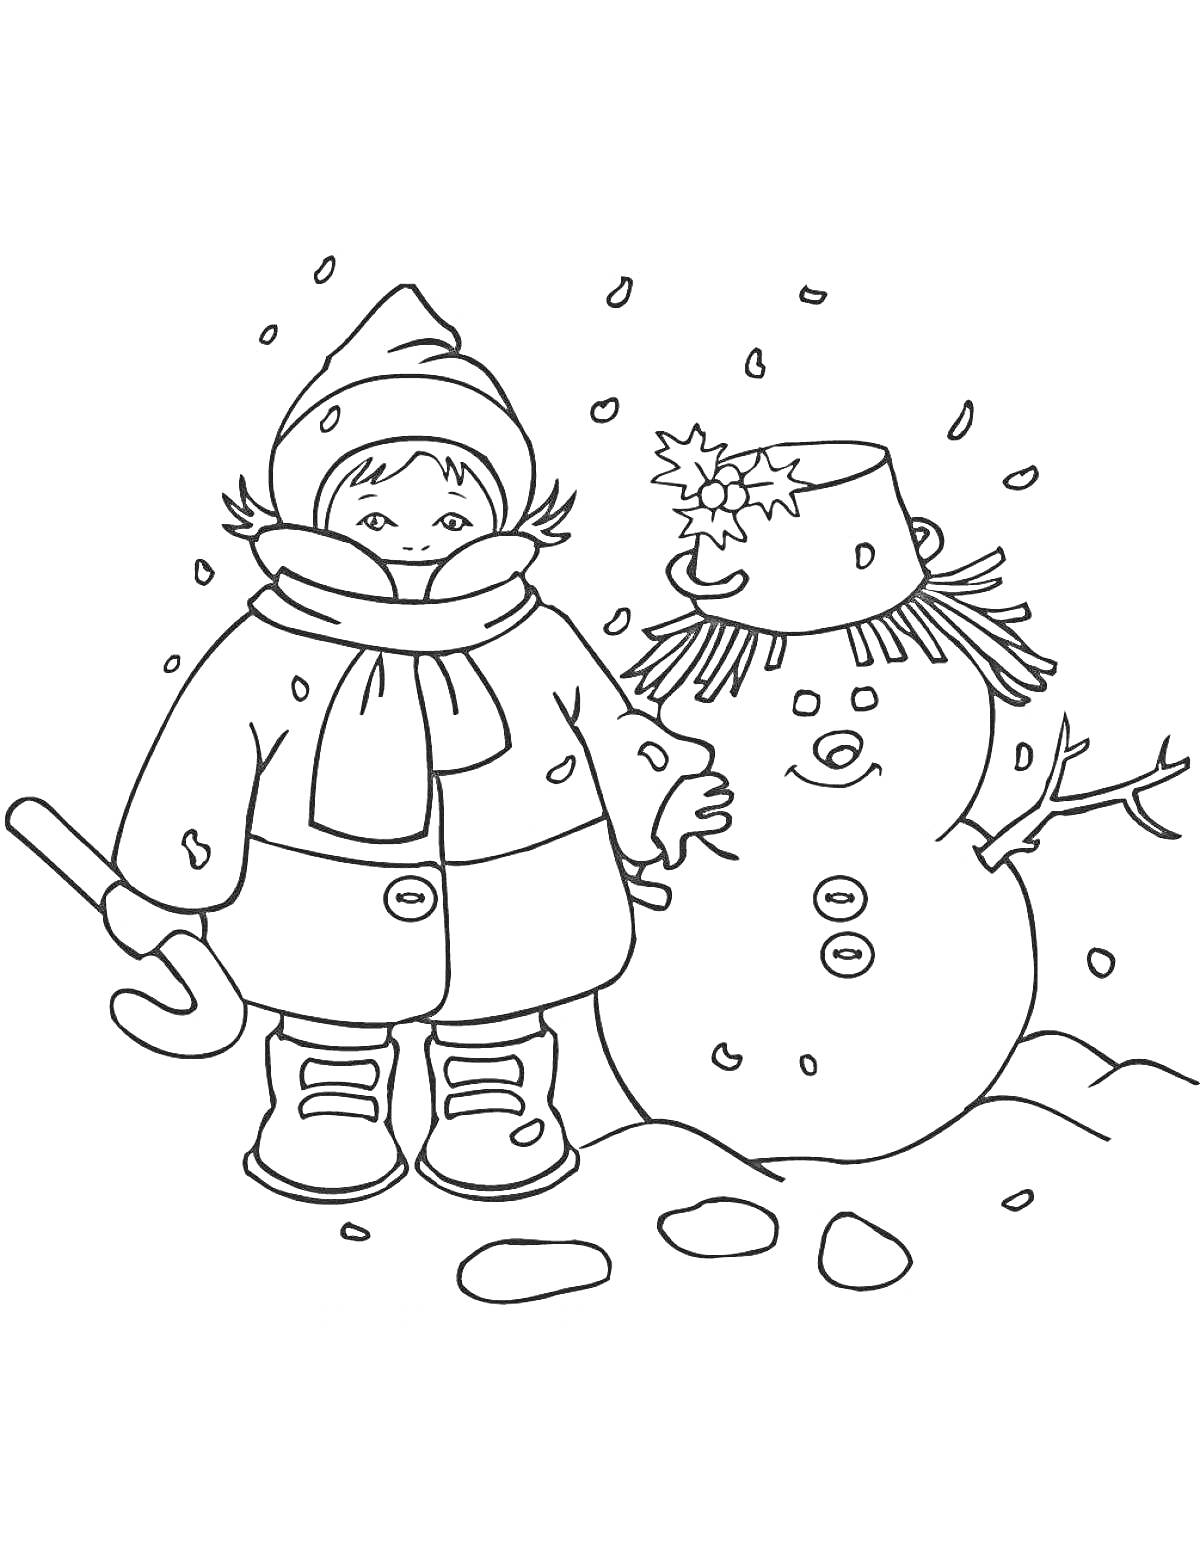 Раскраска Ребенок в зимней одежде и снеговик с ведром на голове